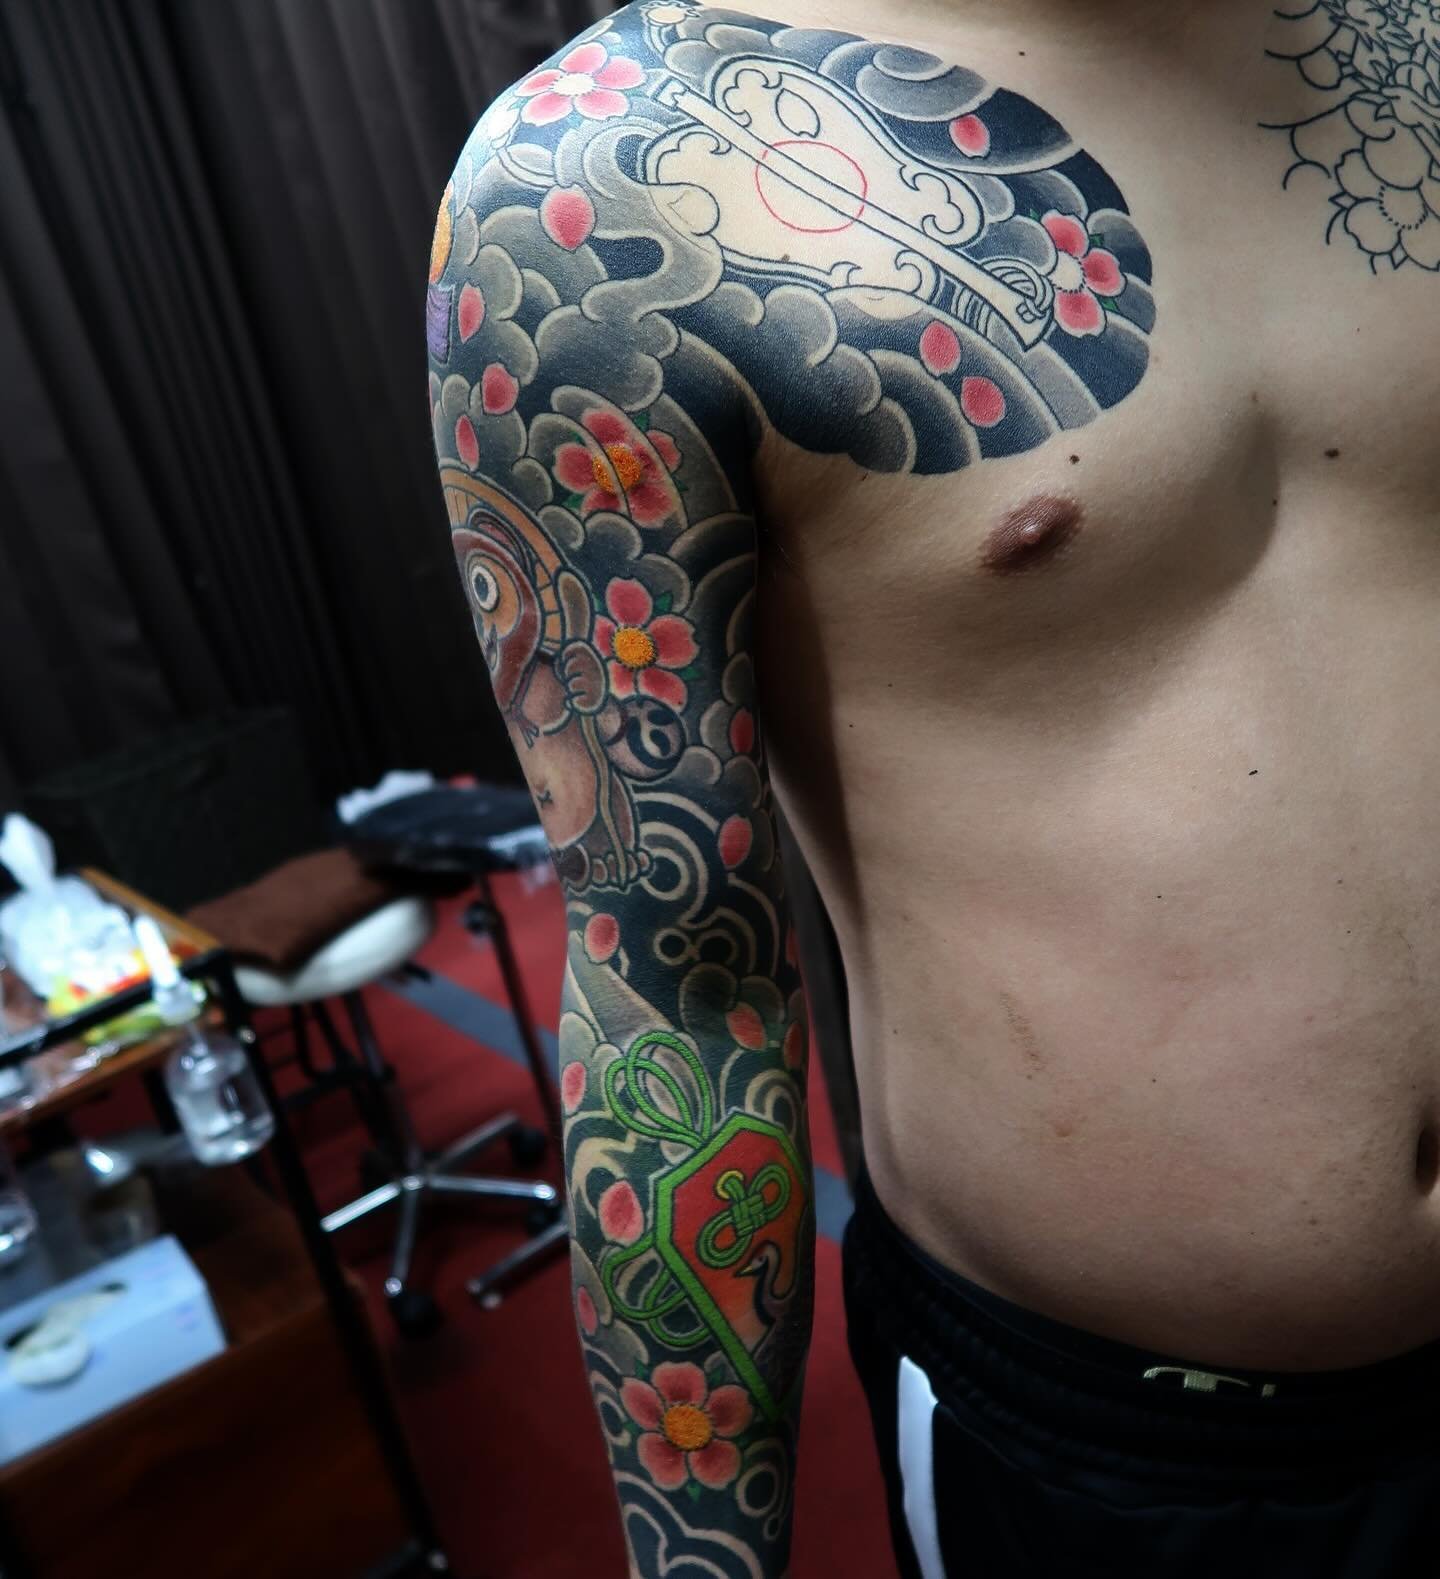 片腕次で終わりです👈
いつもありがとうございます！
次回完成予定です
またよろしくお願いします🙏

By Ryu

#tokyotattoo
#tattooartist
#tattoo
#tattoos
#tattooshop
#irezumi
#fugatattoo
#Japantattoo
#ink
#inked

#タトゥー
#新宿タトゥー
#新宿
#東京タトゥー
#東京
#神奈川タトゥー
#埼玉タトゥー
#千葉タトゥー
#フーガタトゥー
#胸割り
#女性彫師